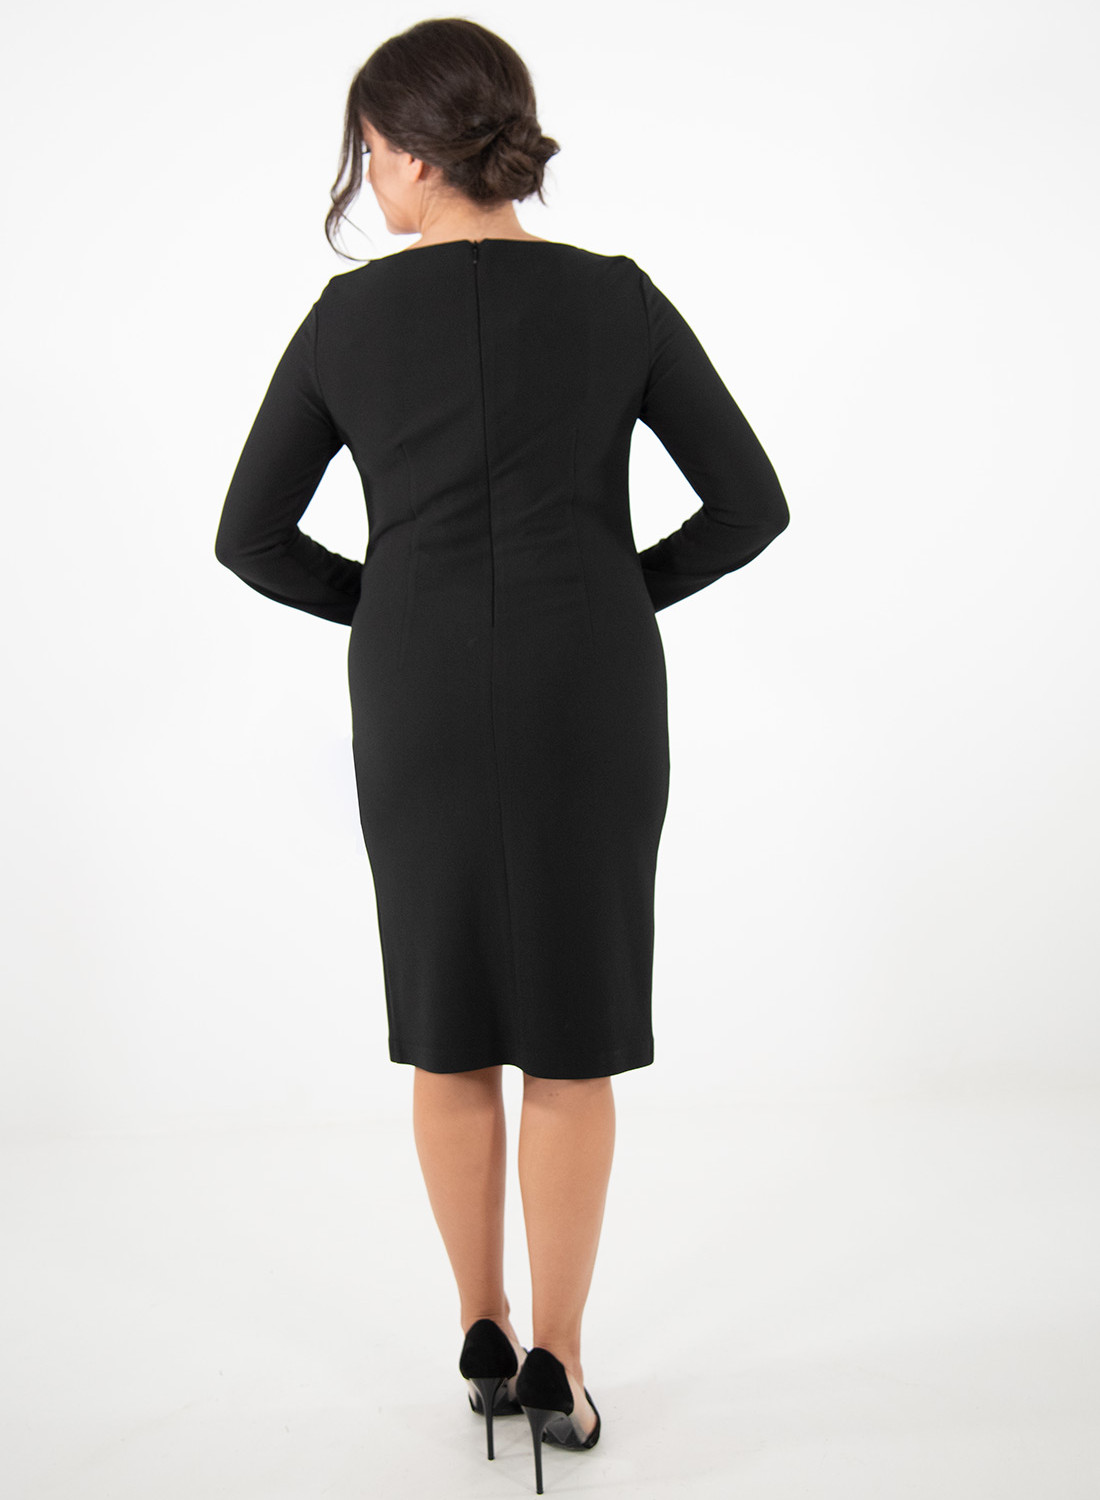 Μαύρο φόρεμα με φλοράλ λεπτομέρεια